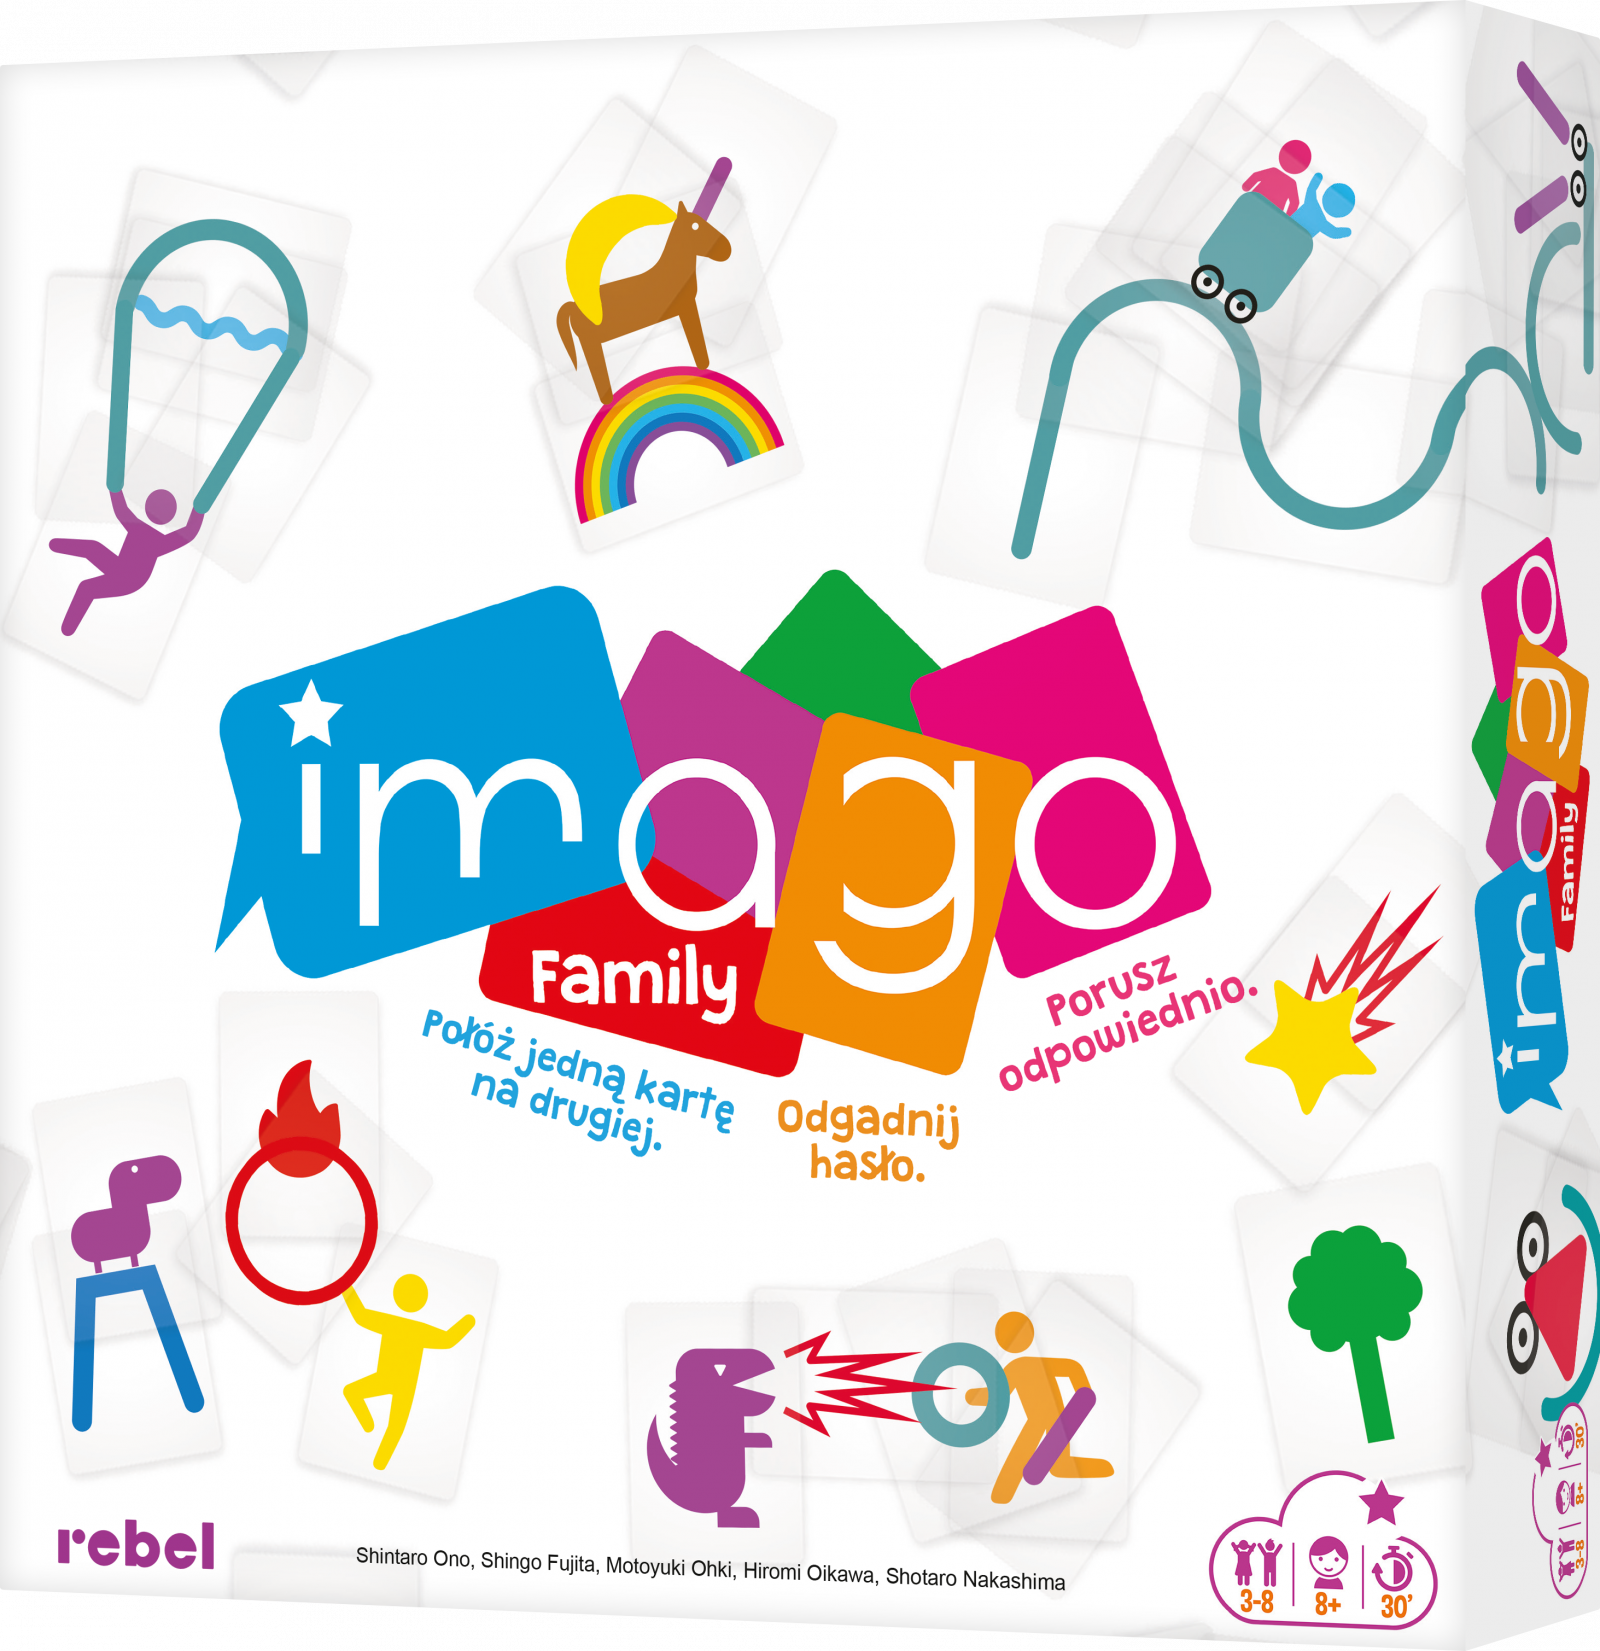 Imago family